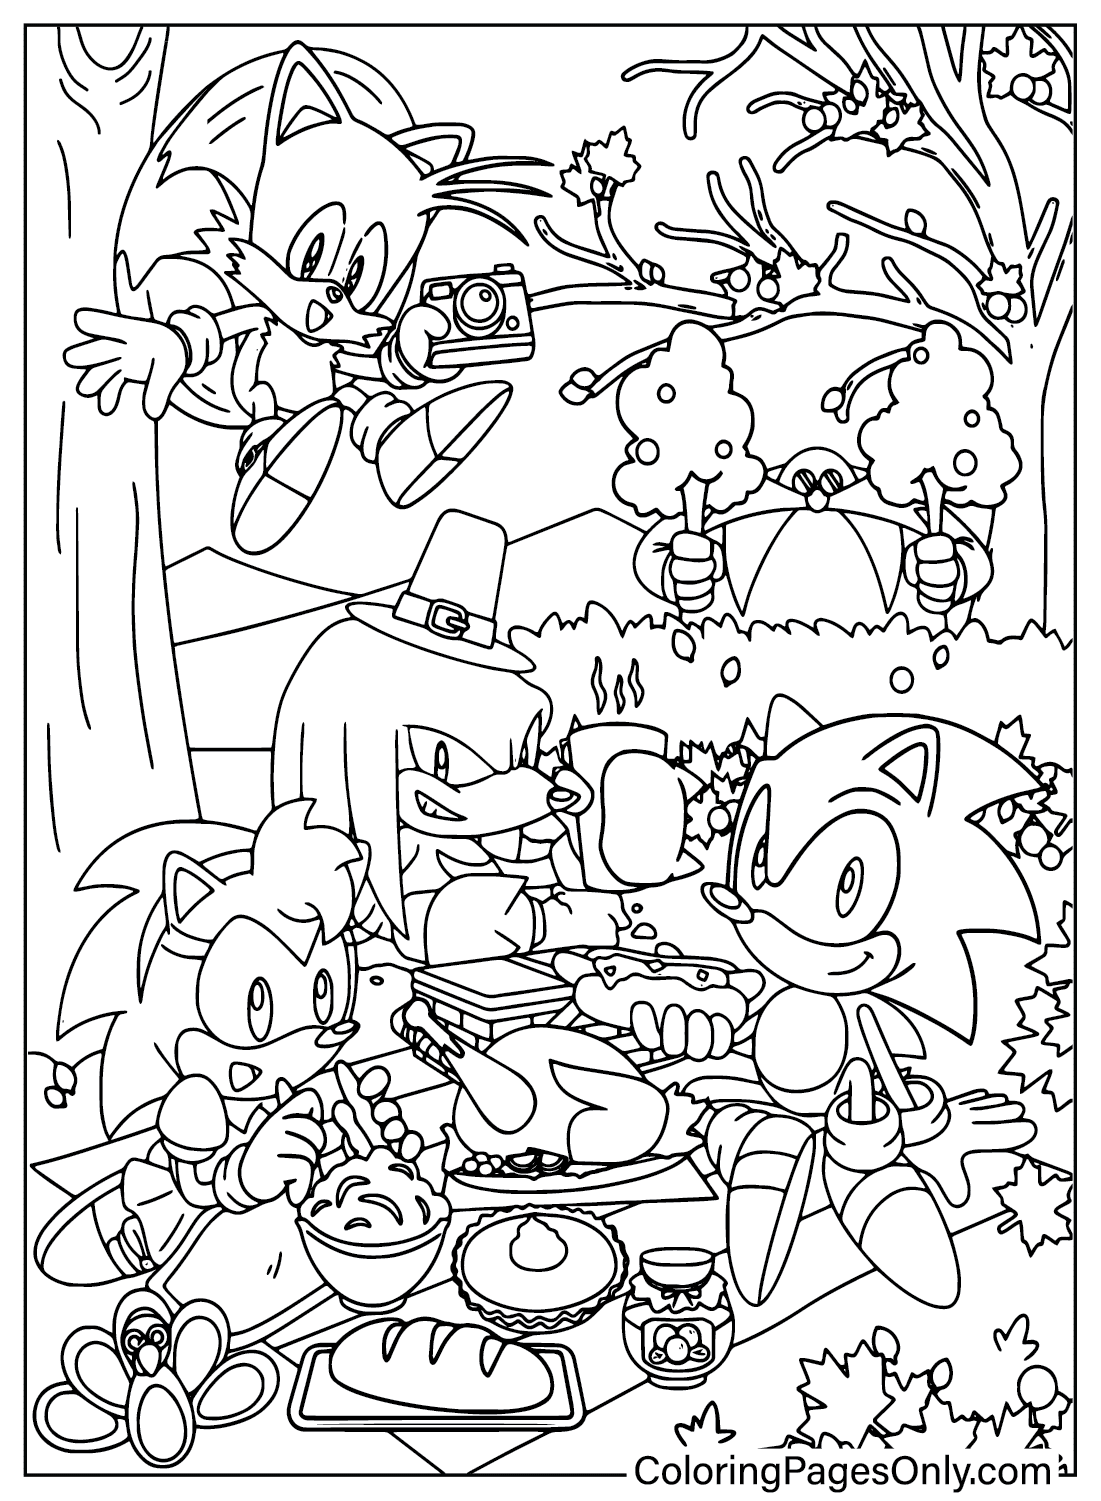 Página para colorear de Sonic de Acción de Gracias de dibujos animados de Acción de Gracias